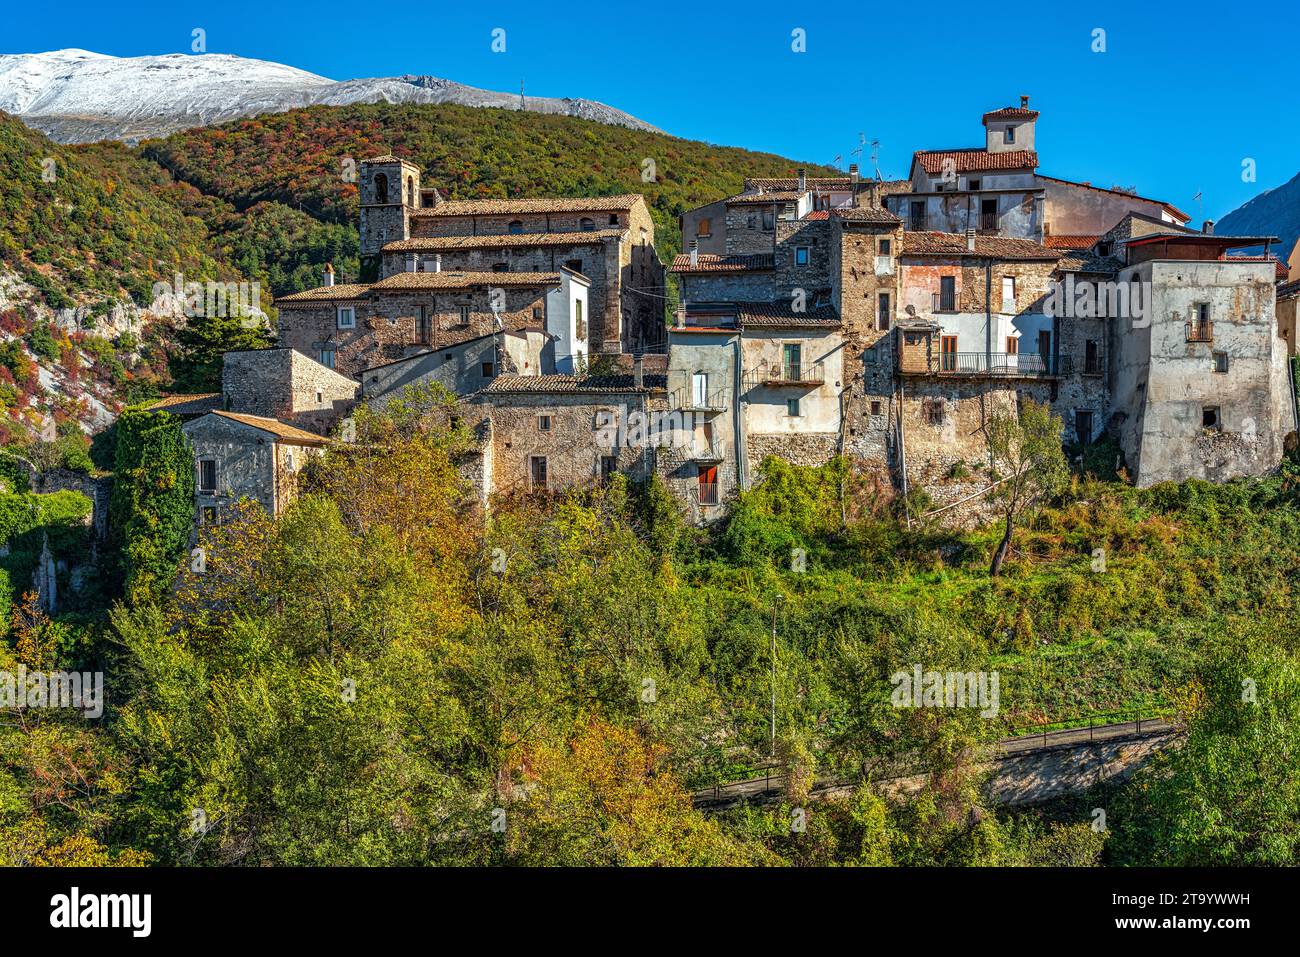 Paesaggio delle antiche case in pietra addossate l'una all'altra nel borgo montano di Cansano. Cansano, provincia dell'Aquila, Abruzzo, Italia Foto Stock